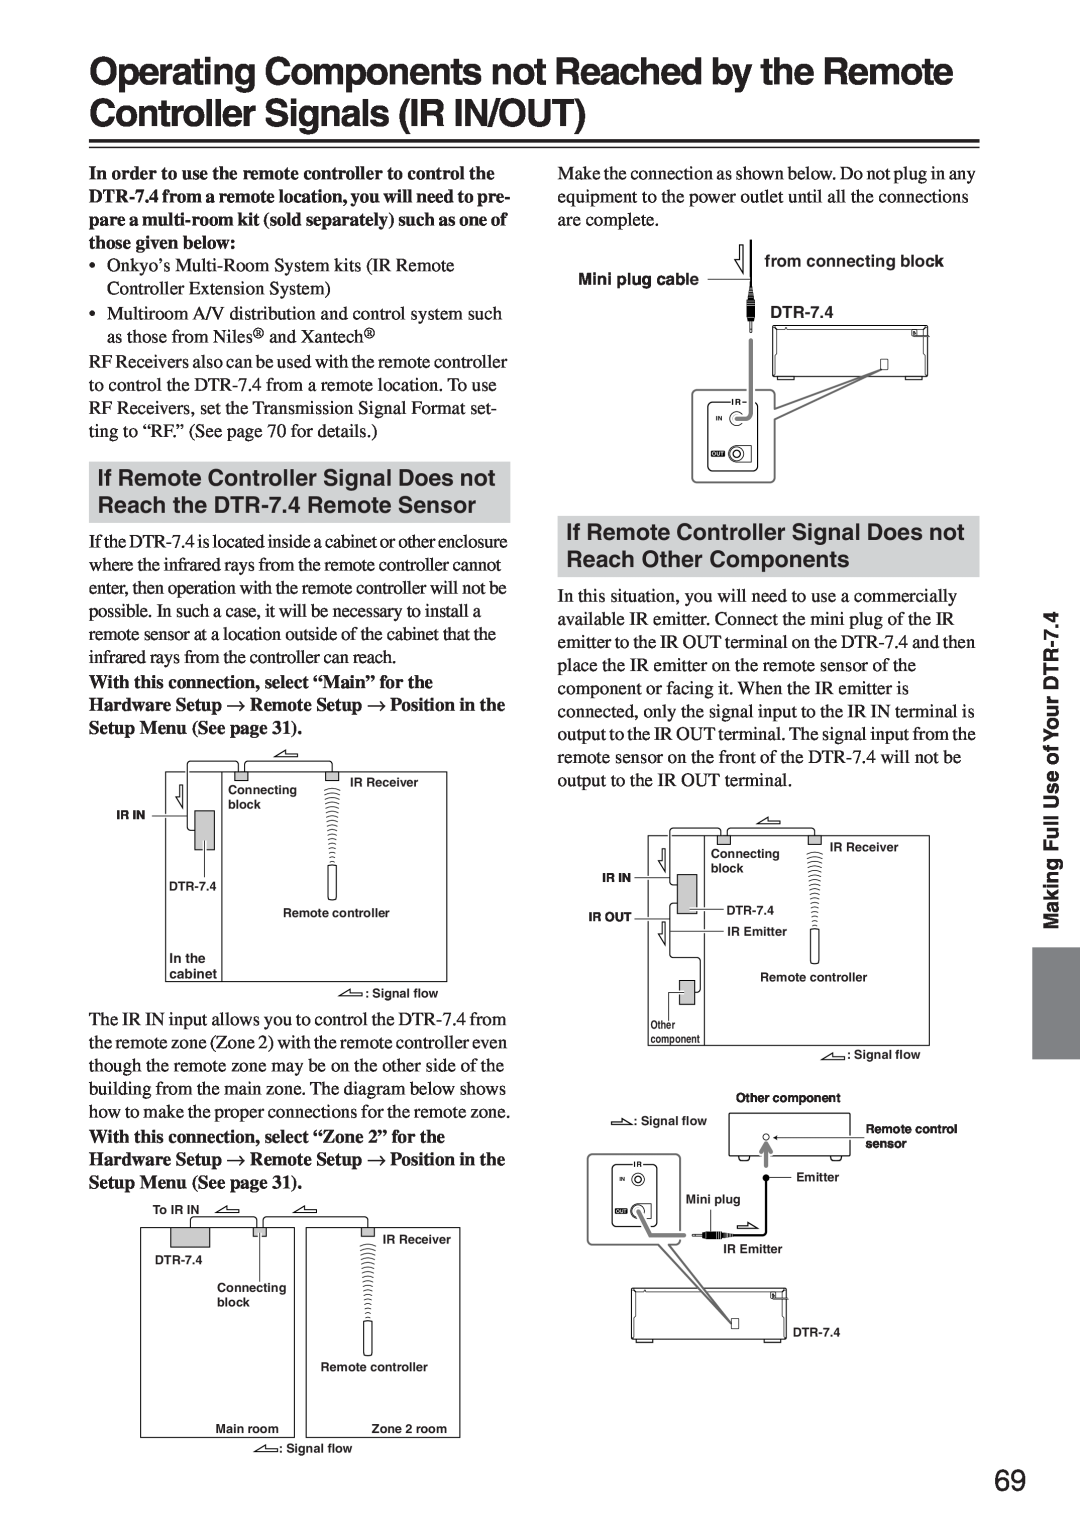 Integra DTR-7.4 instruction manual Setup Menu See page 